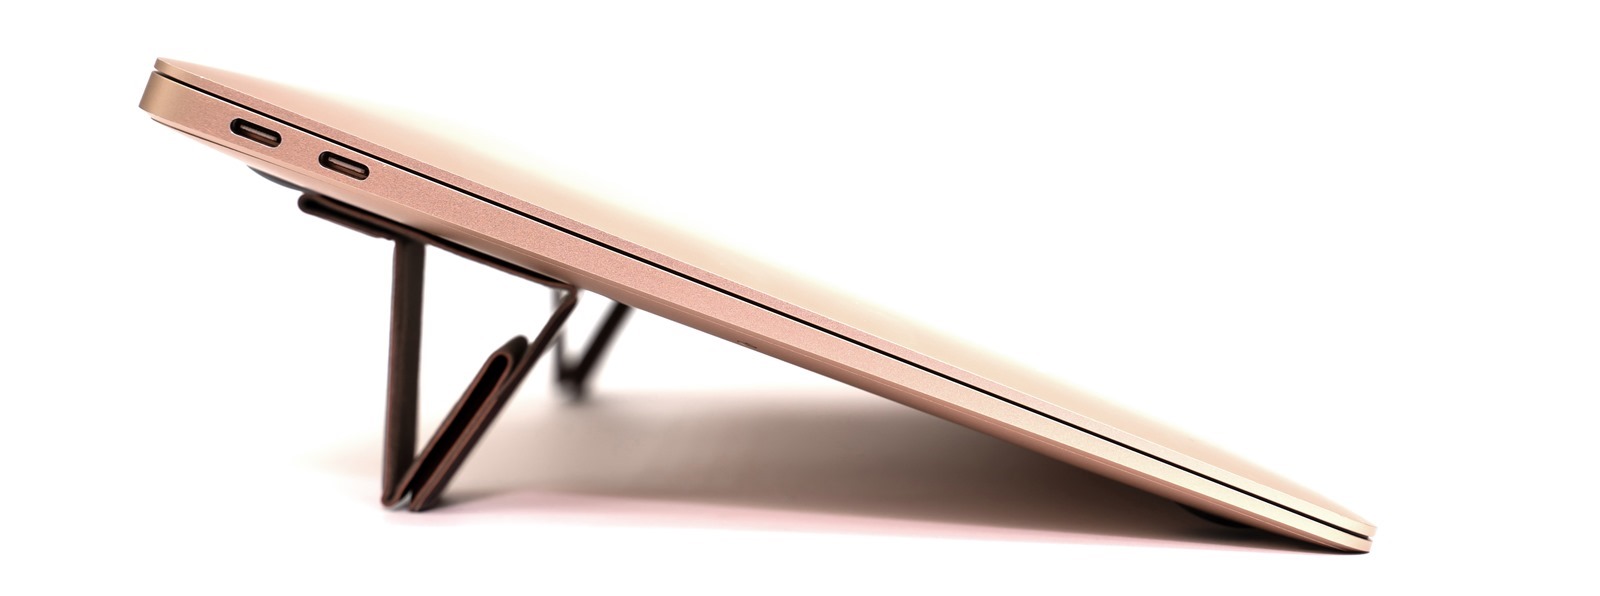 皮革質感、 0.4cm 的超薄輕巧，優雅自由，地表最小最美 Bestmade NEO 皮革筆電架來了！ @3C 達人廖阿輝